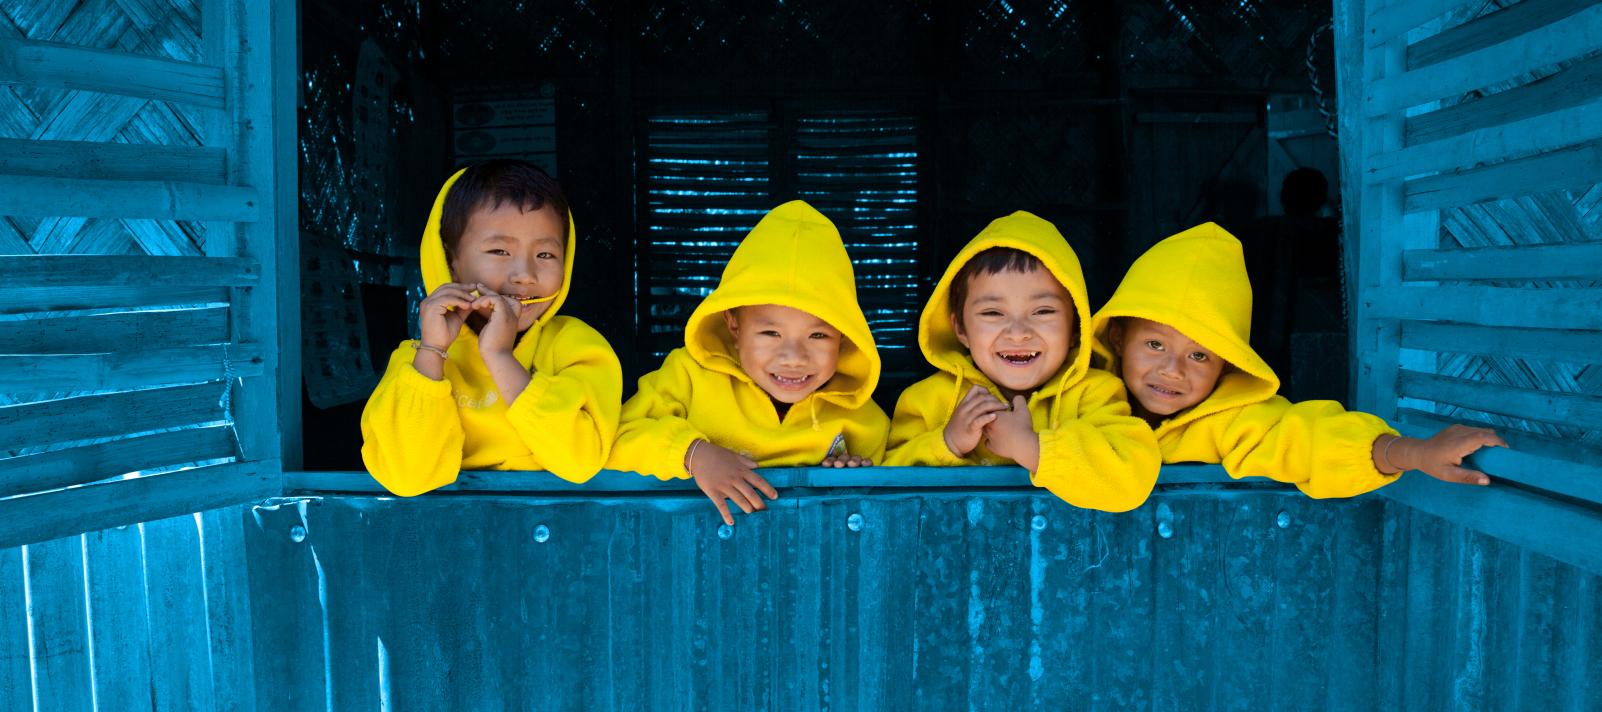 Four children look out an open window, Bangladesh